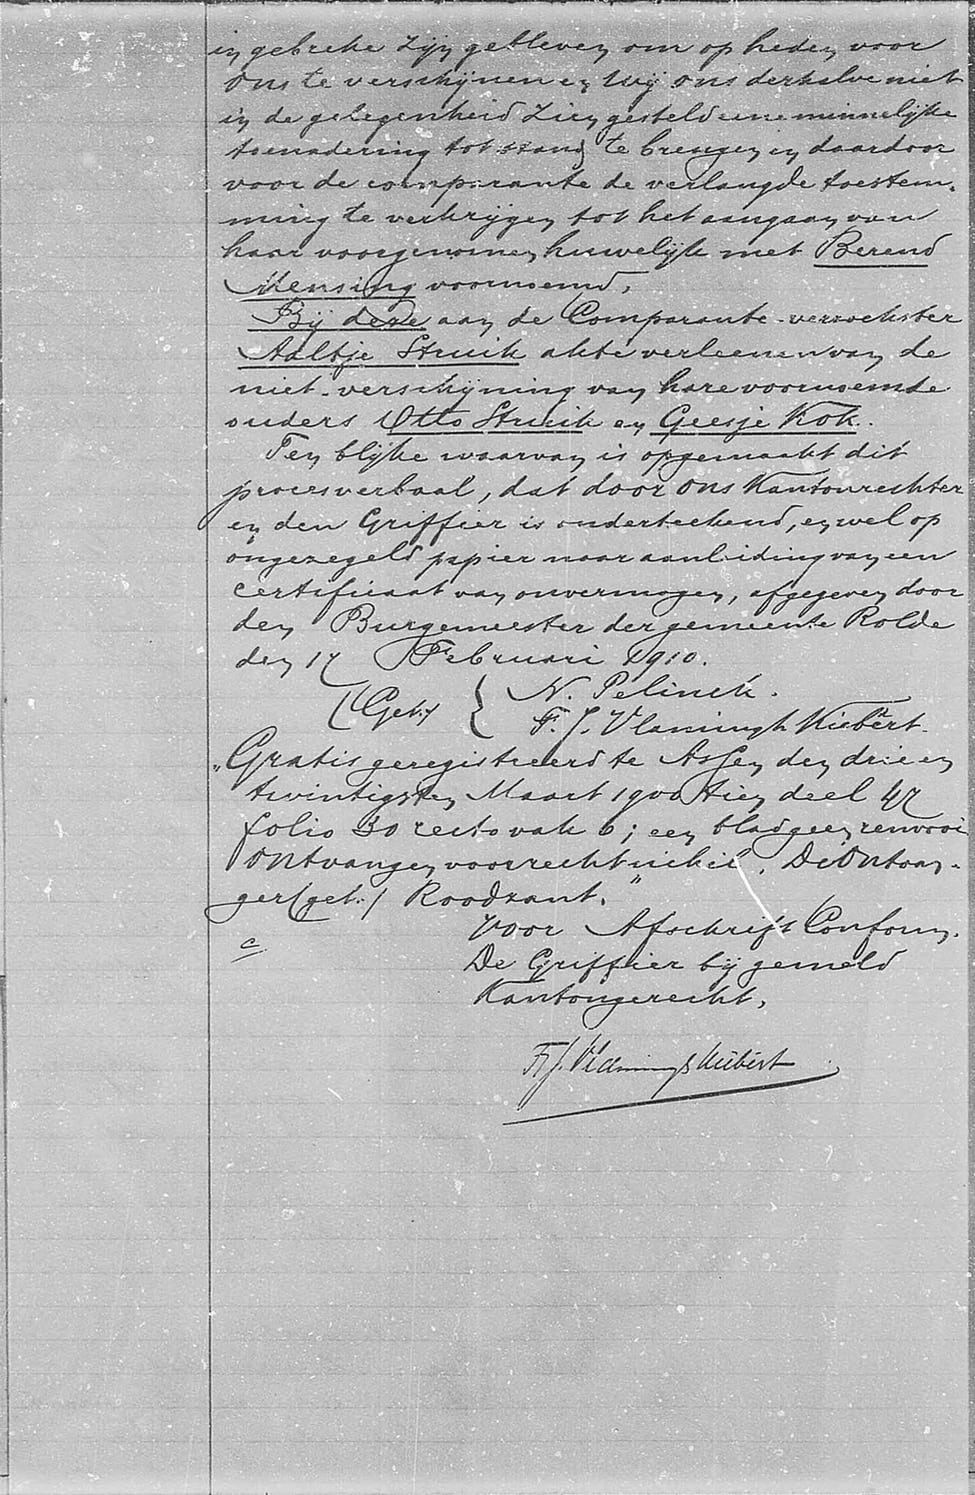 Register schrijven uitspraak huwelijk 1910 02